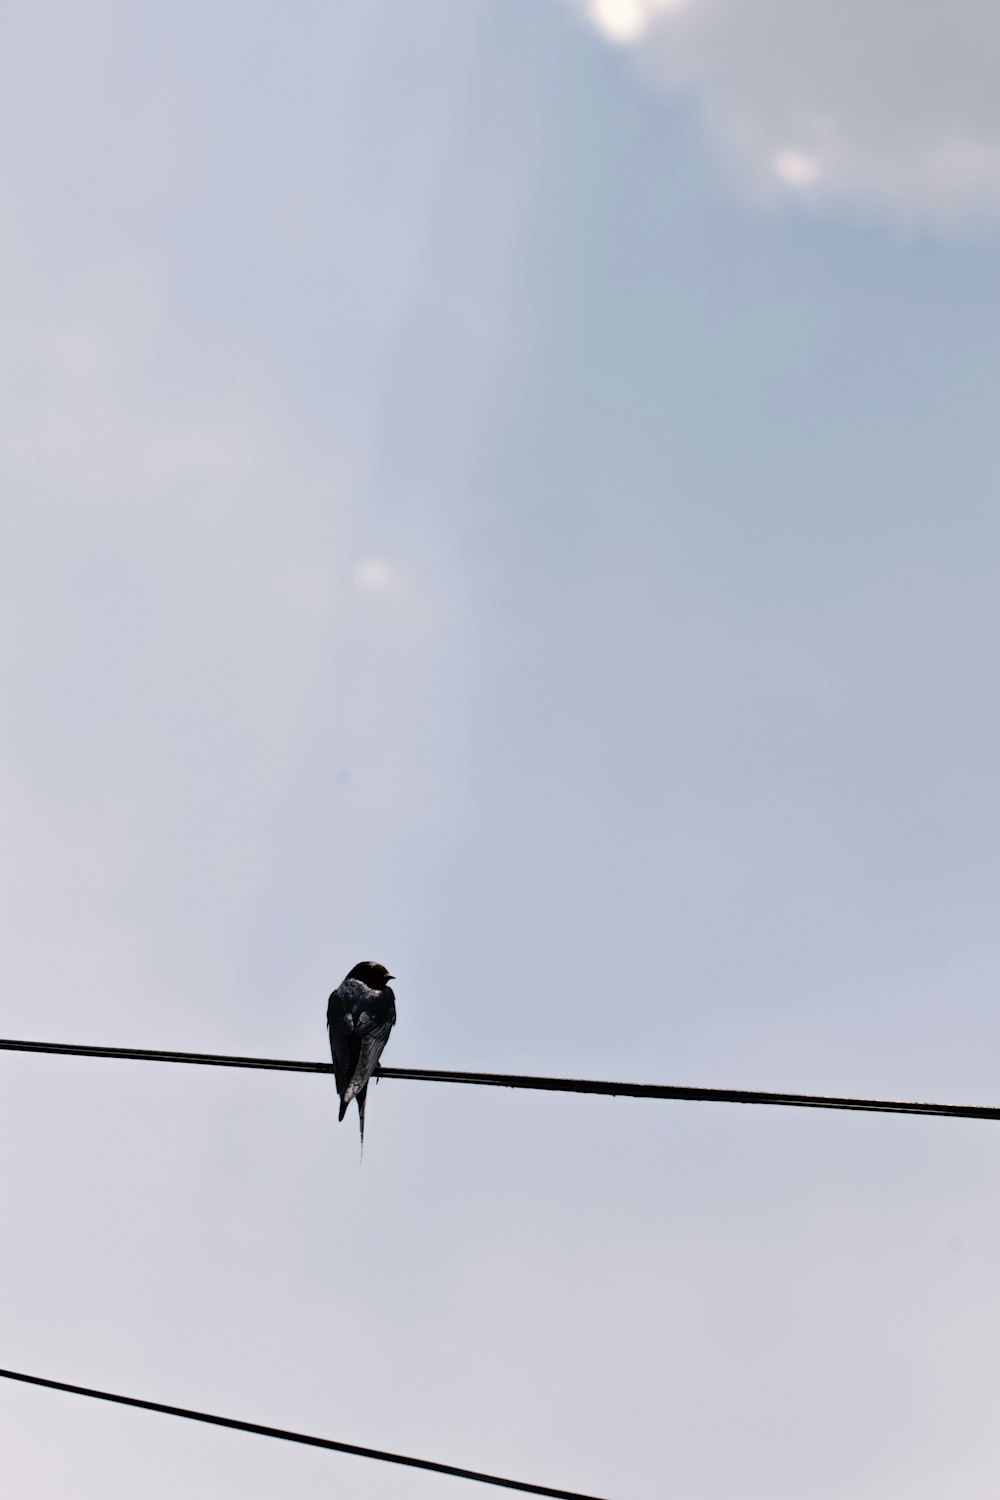 black bird on black wire during daytime